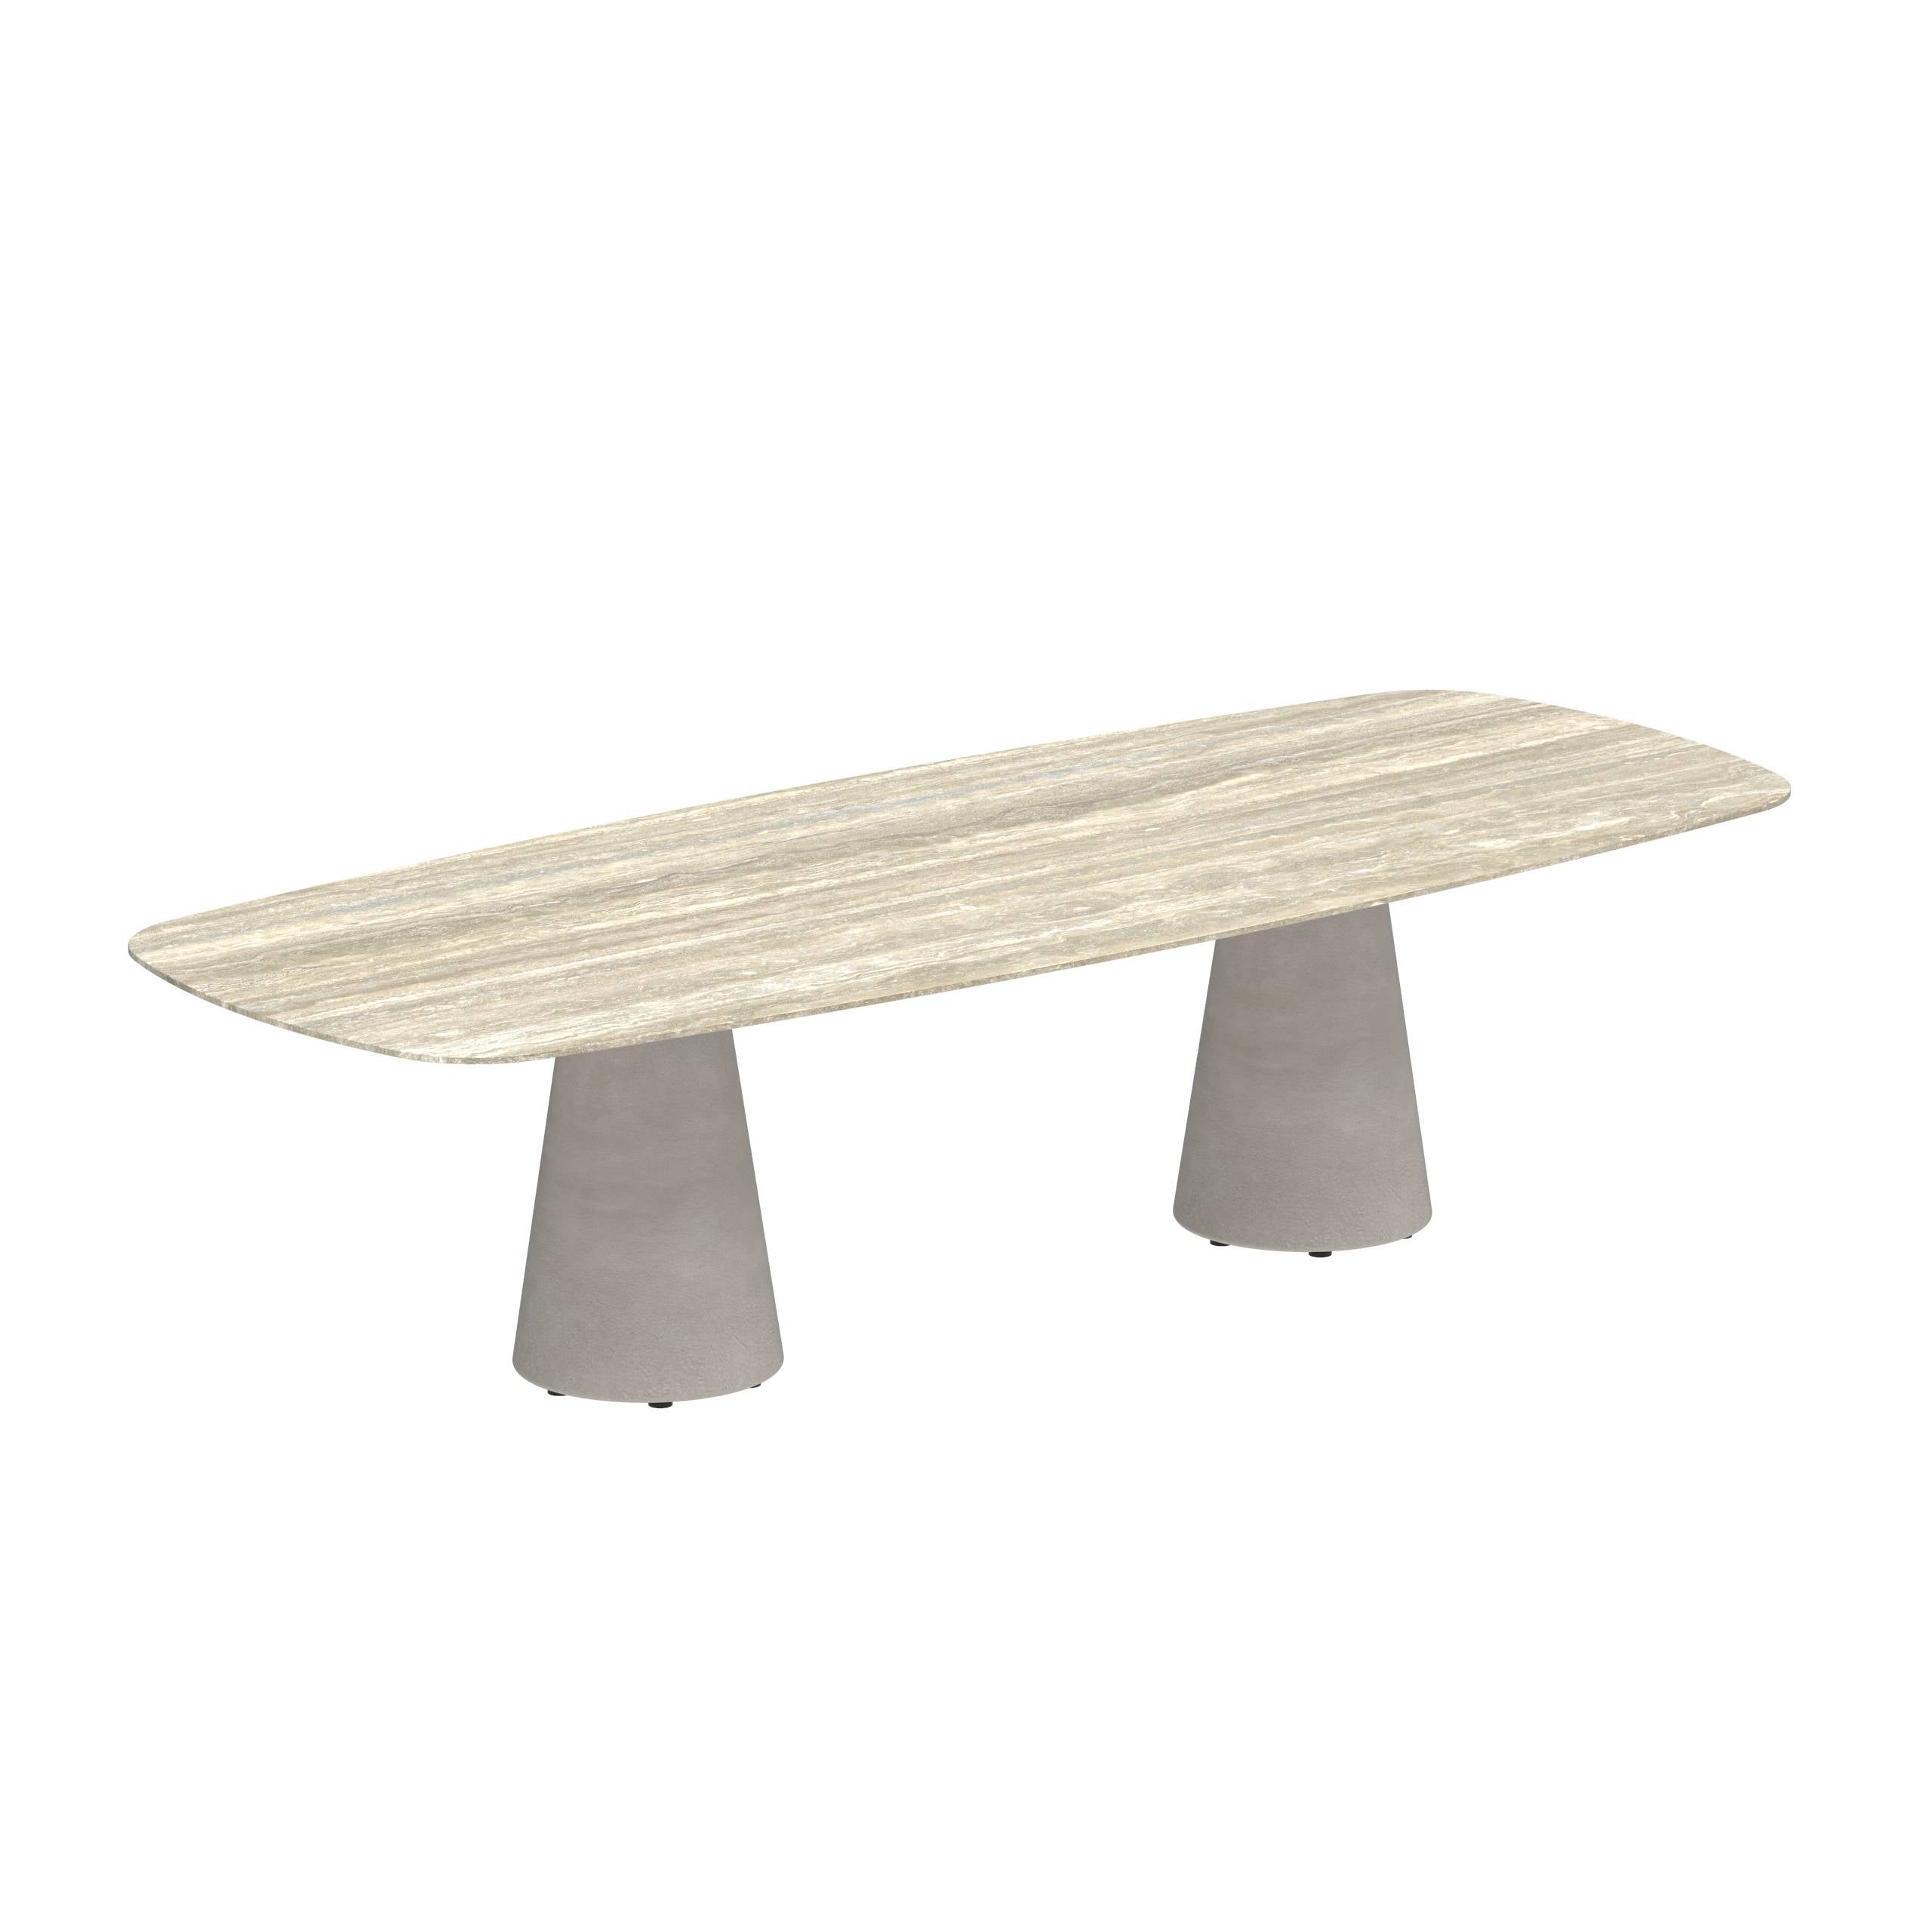 Conix Table 300x120 Cm Legs Concrete Cement Grey - Table Top Ceramic Travertino